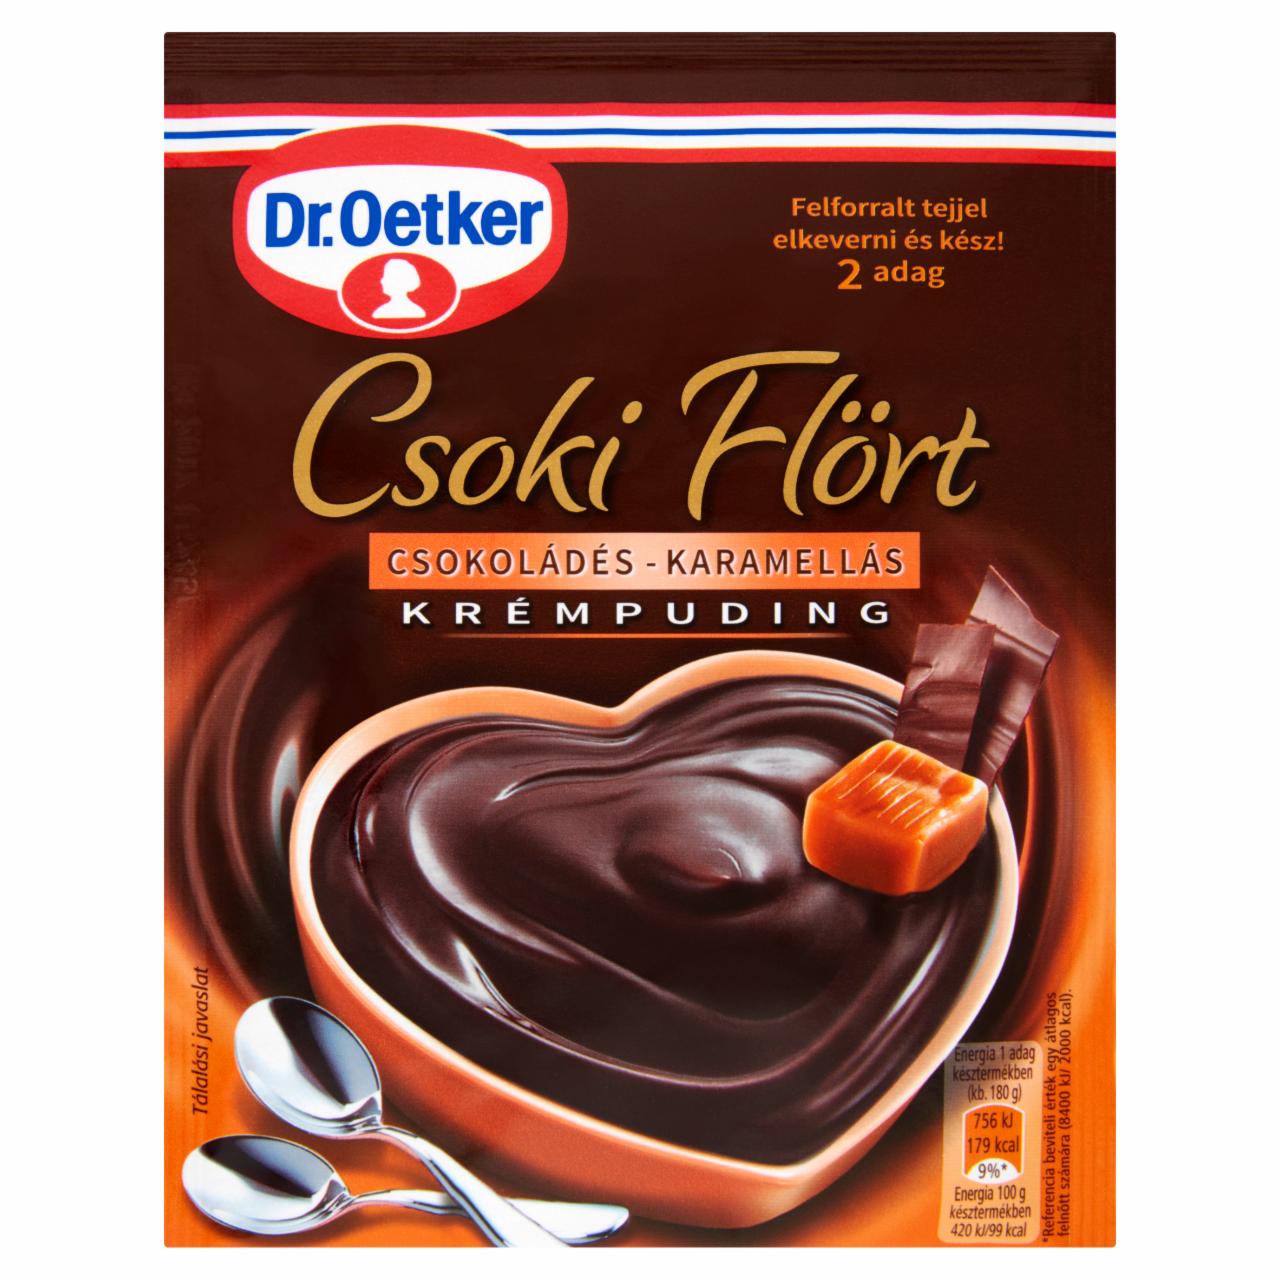 Képek - Dr. Oetker Csoki Flört csokoládés-karamellás krémpudingpor 60 g